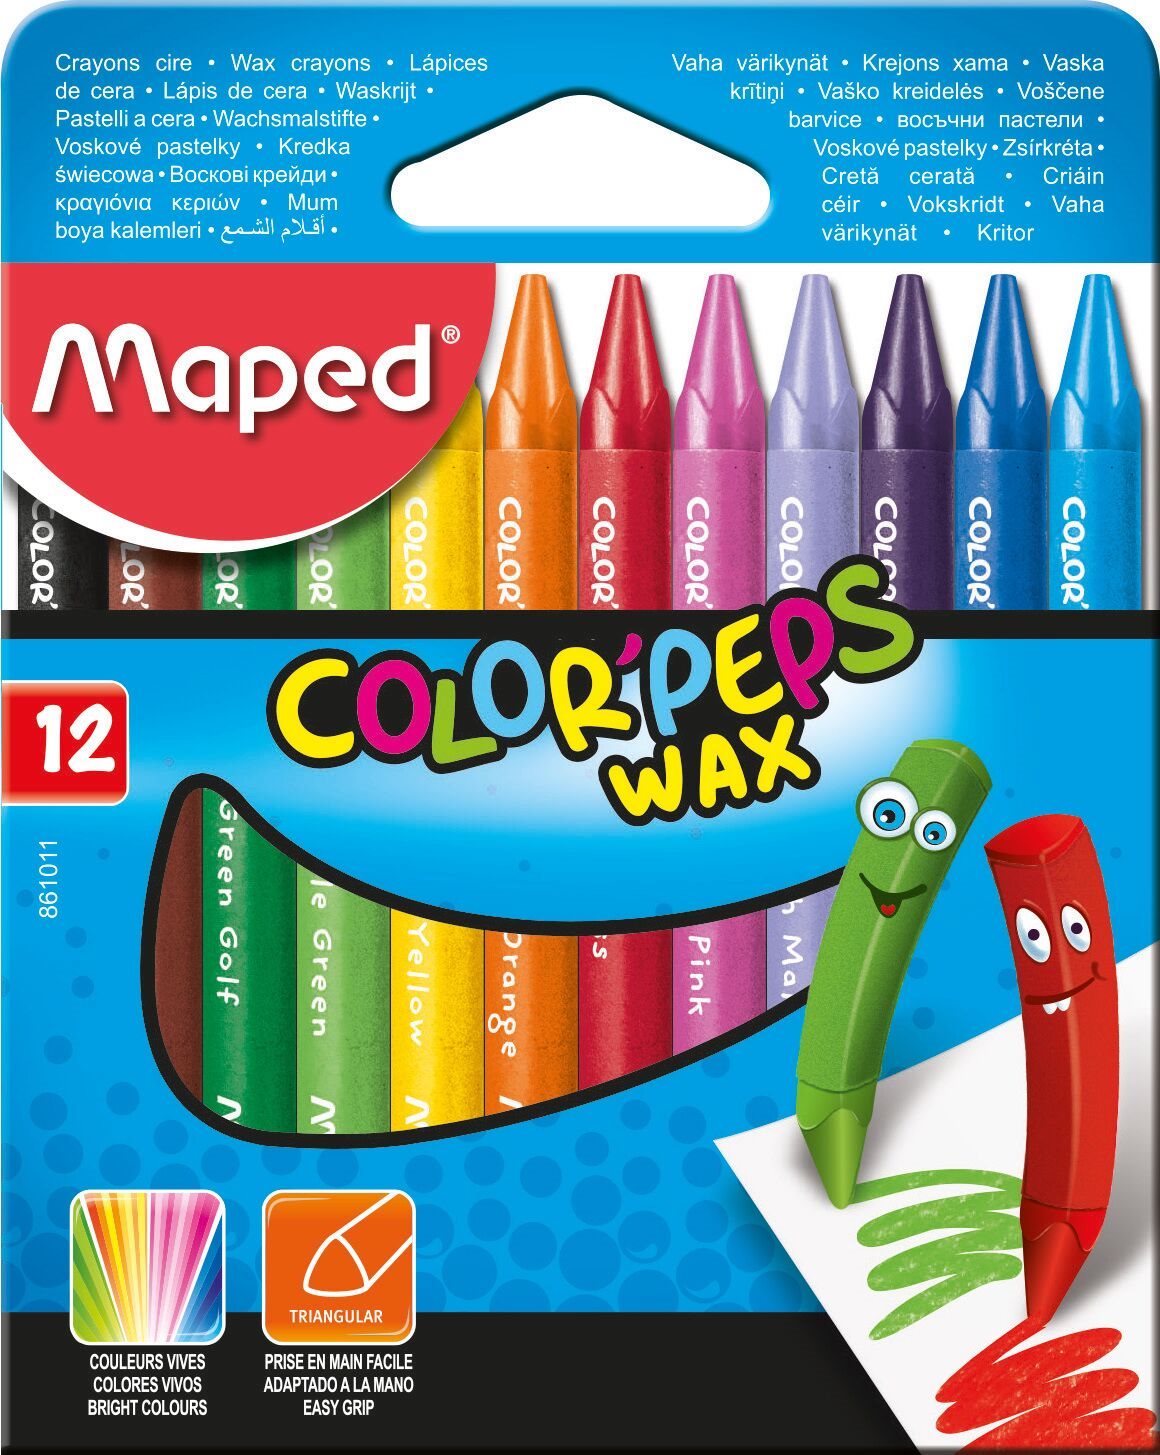 Maped Color Peps Wax, 12 különböző szín